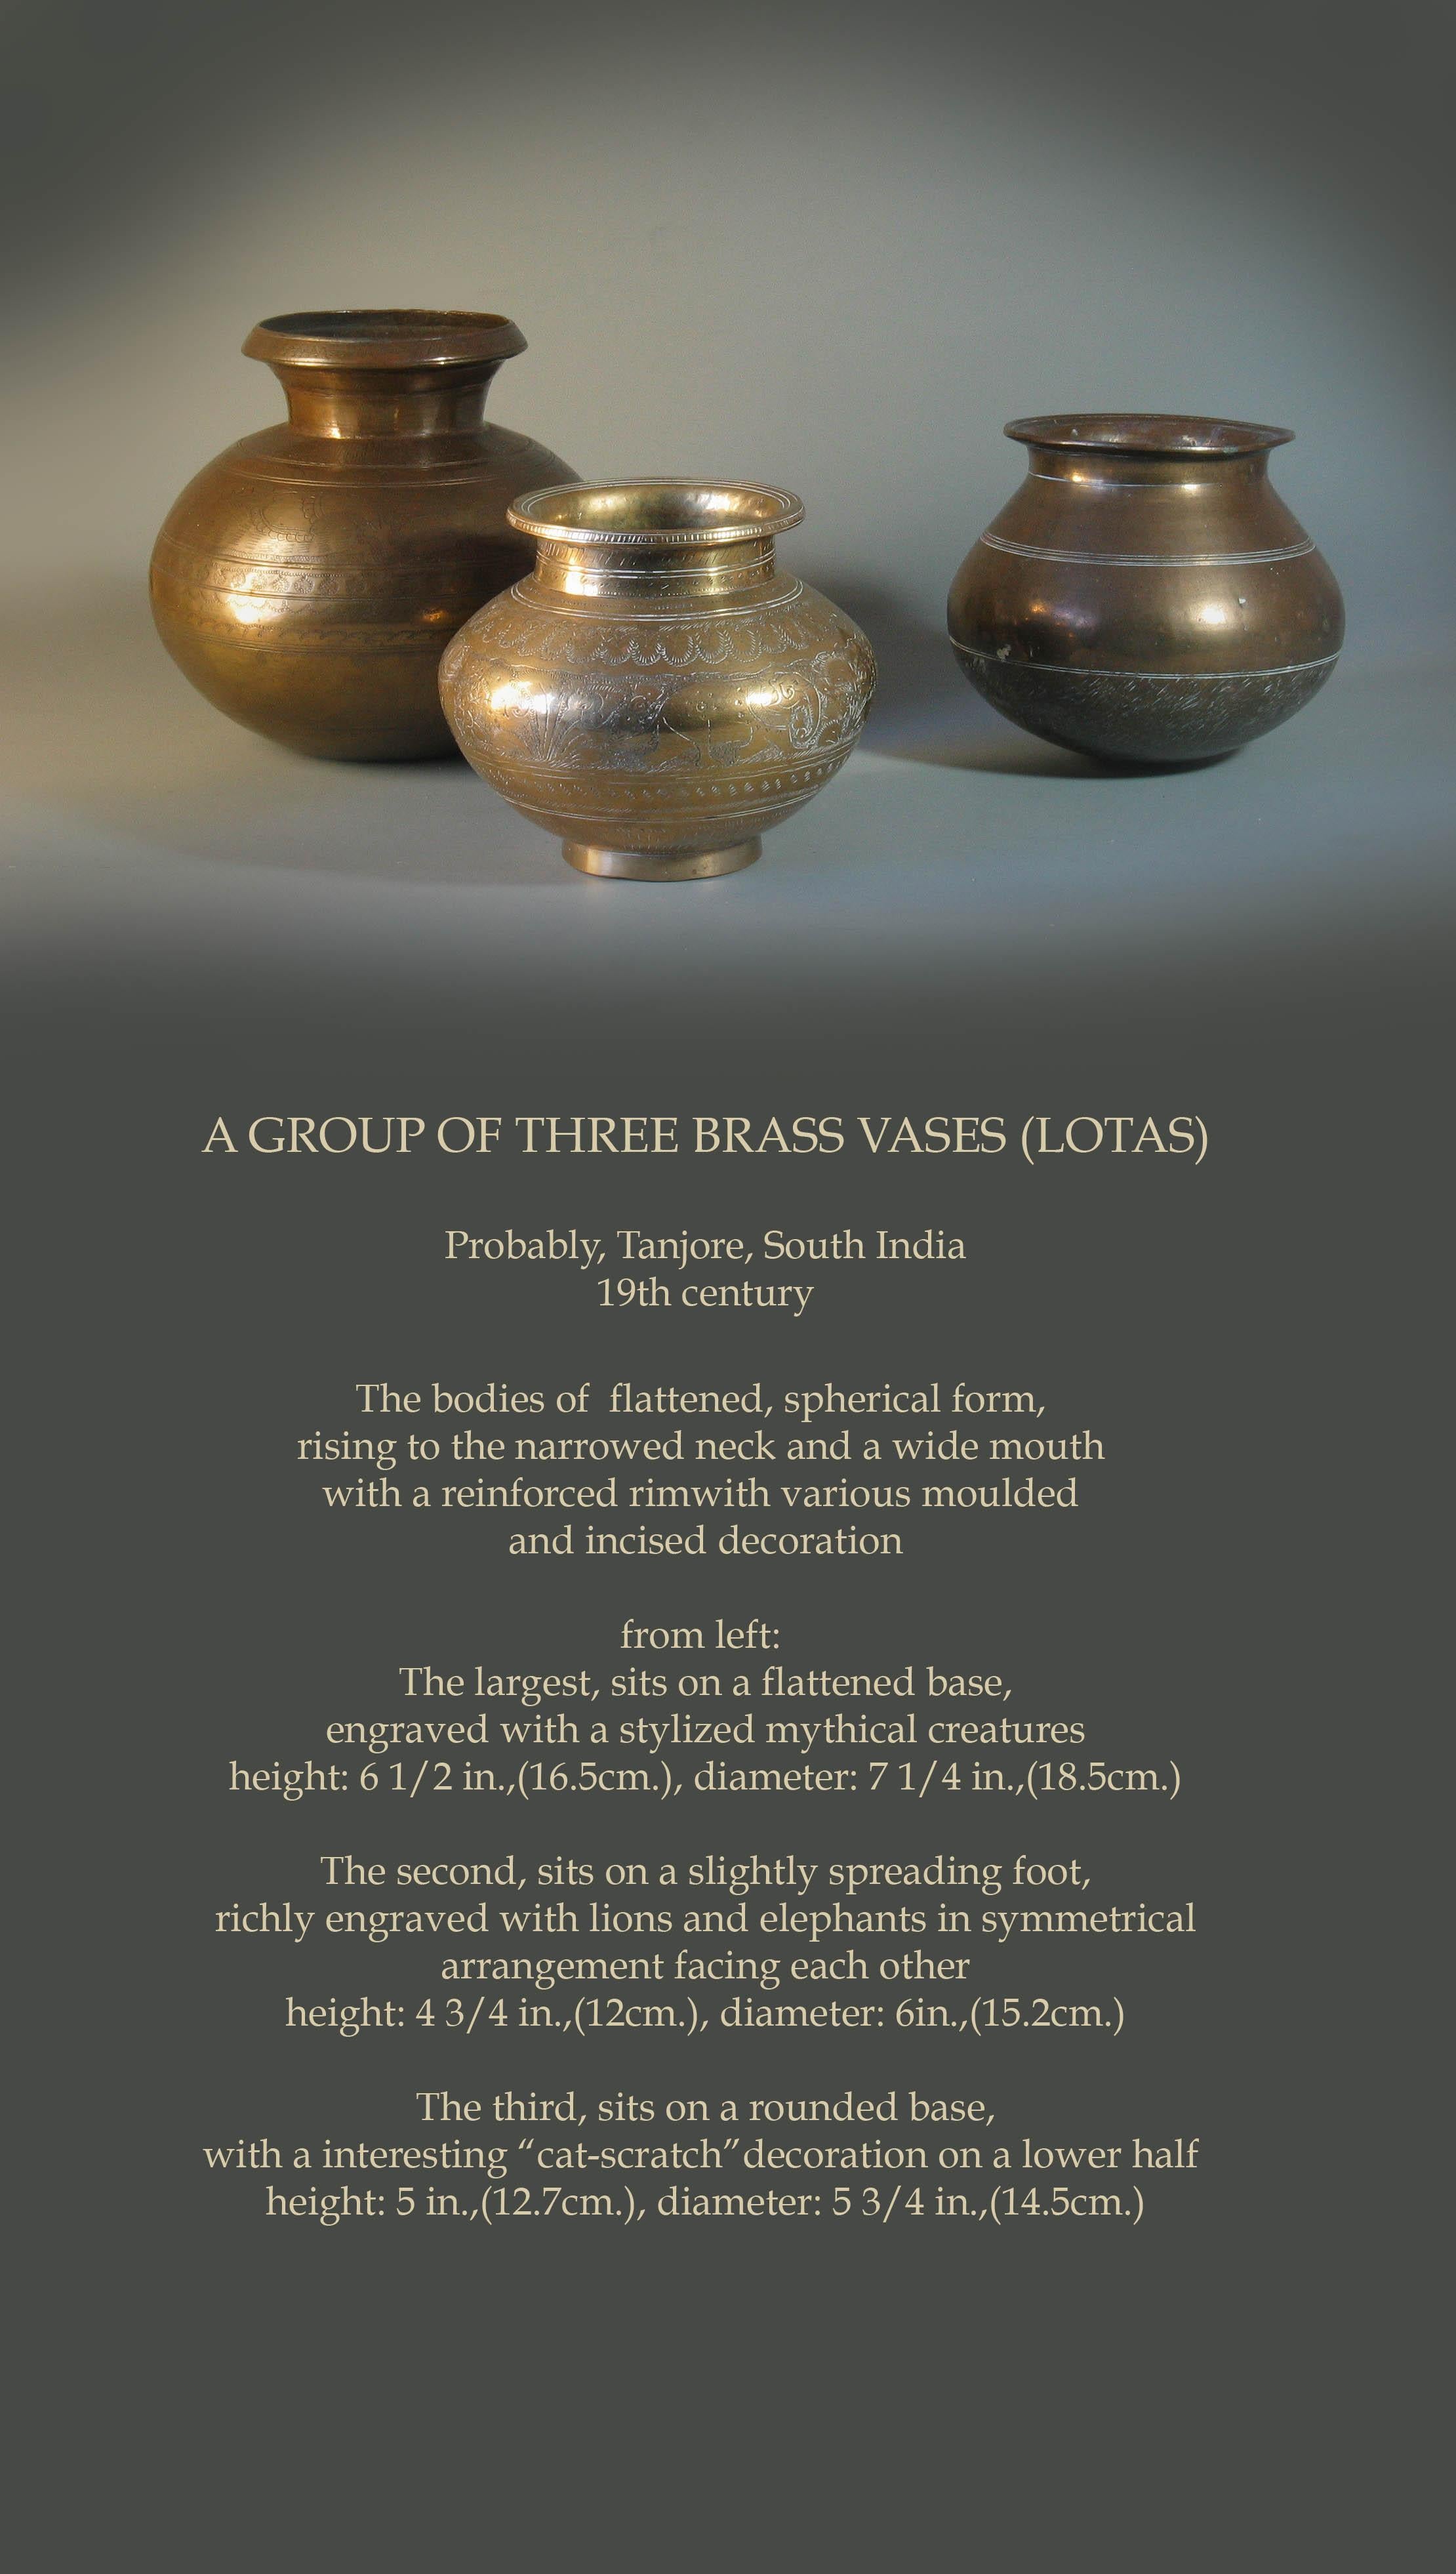 Groupe de trois vases en laiton

Probablement, Tanjore, Inde du Sud
19ème siècle

Les corps de forme aplatie, sphérique, 
s'élevant jusqu'au cou rétréci et à la large bouche 
avec une jante renforcée avec divers éléments moulés. 
et des